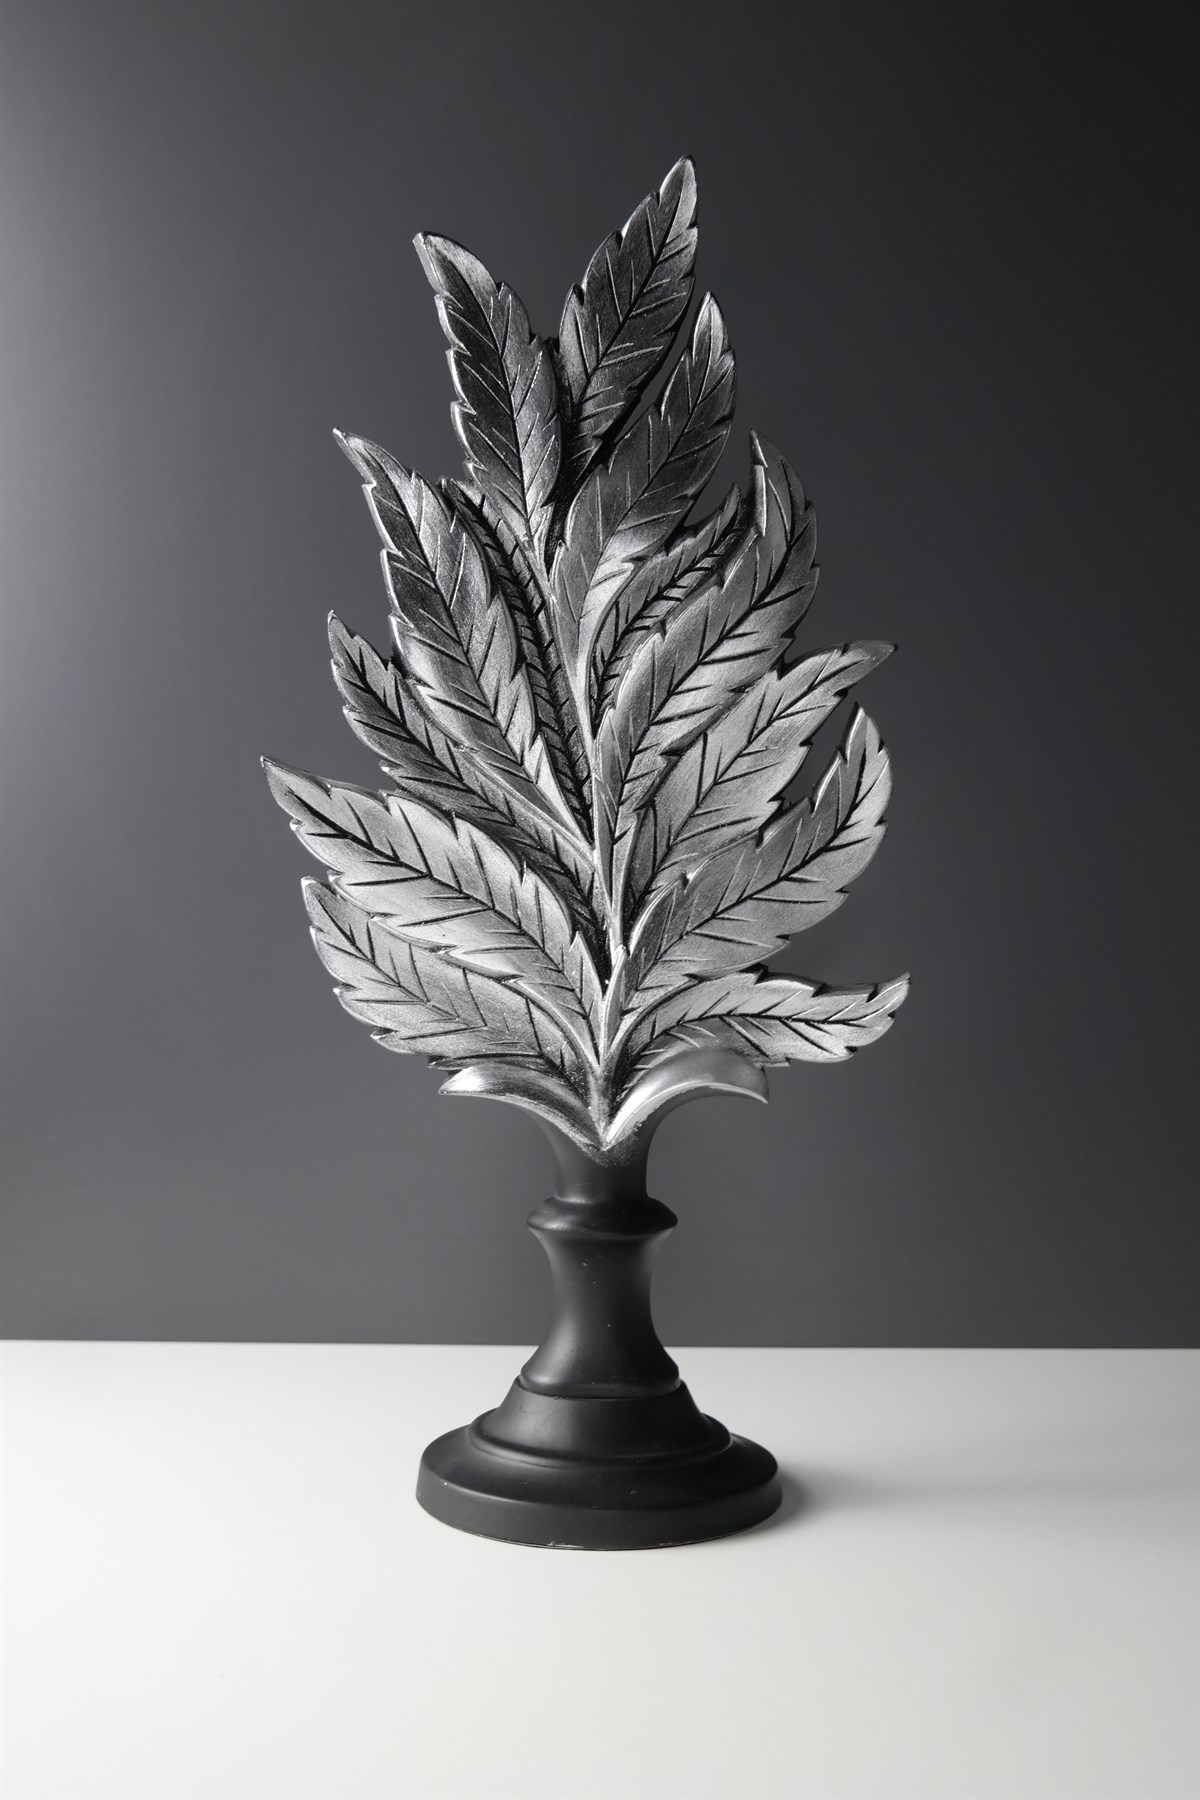 Gümüş Renk Antik Dekoratif Yaprak Objesi 22cmx44cmx12cm Fiyatları | Joy  Home Accessories